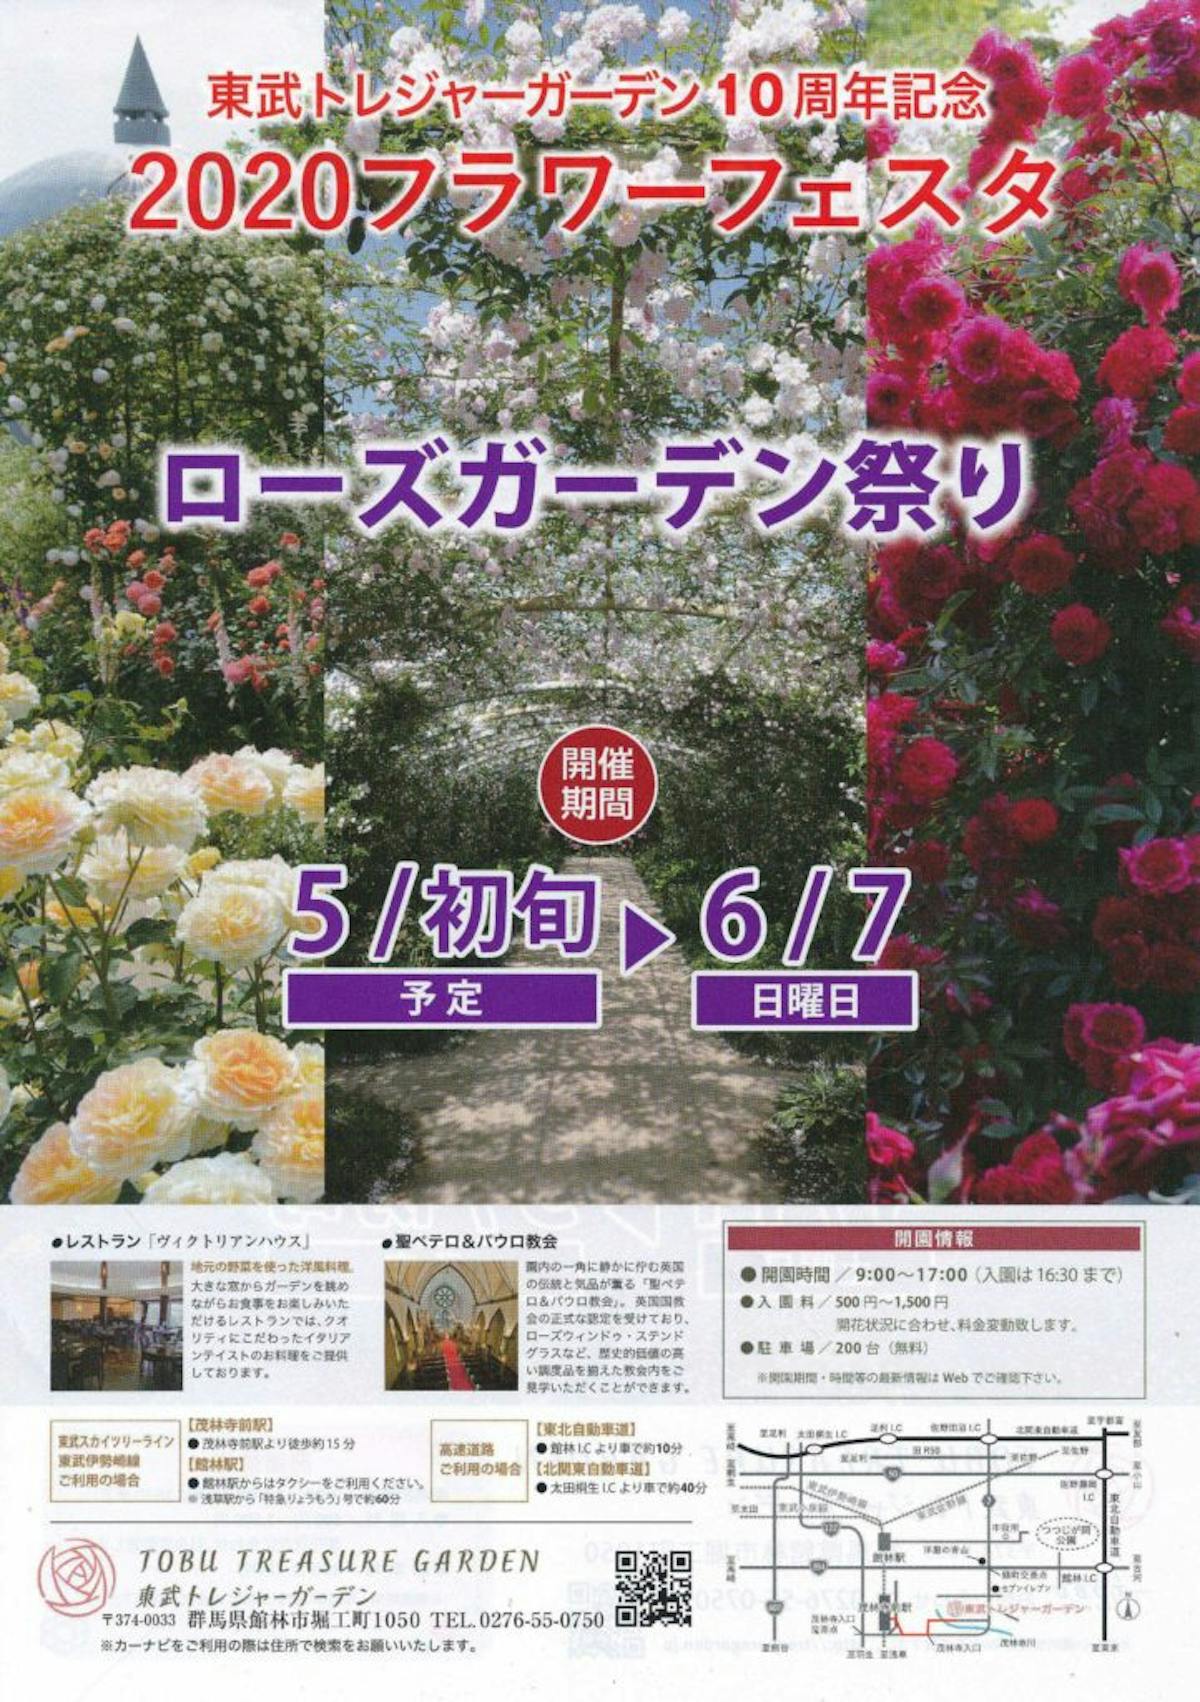 東武トレジャーガーデン ローズガーデン祭り 様々な花々がバラにコラボ オマツリジャパン あなたと祭りをつなげるメディア